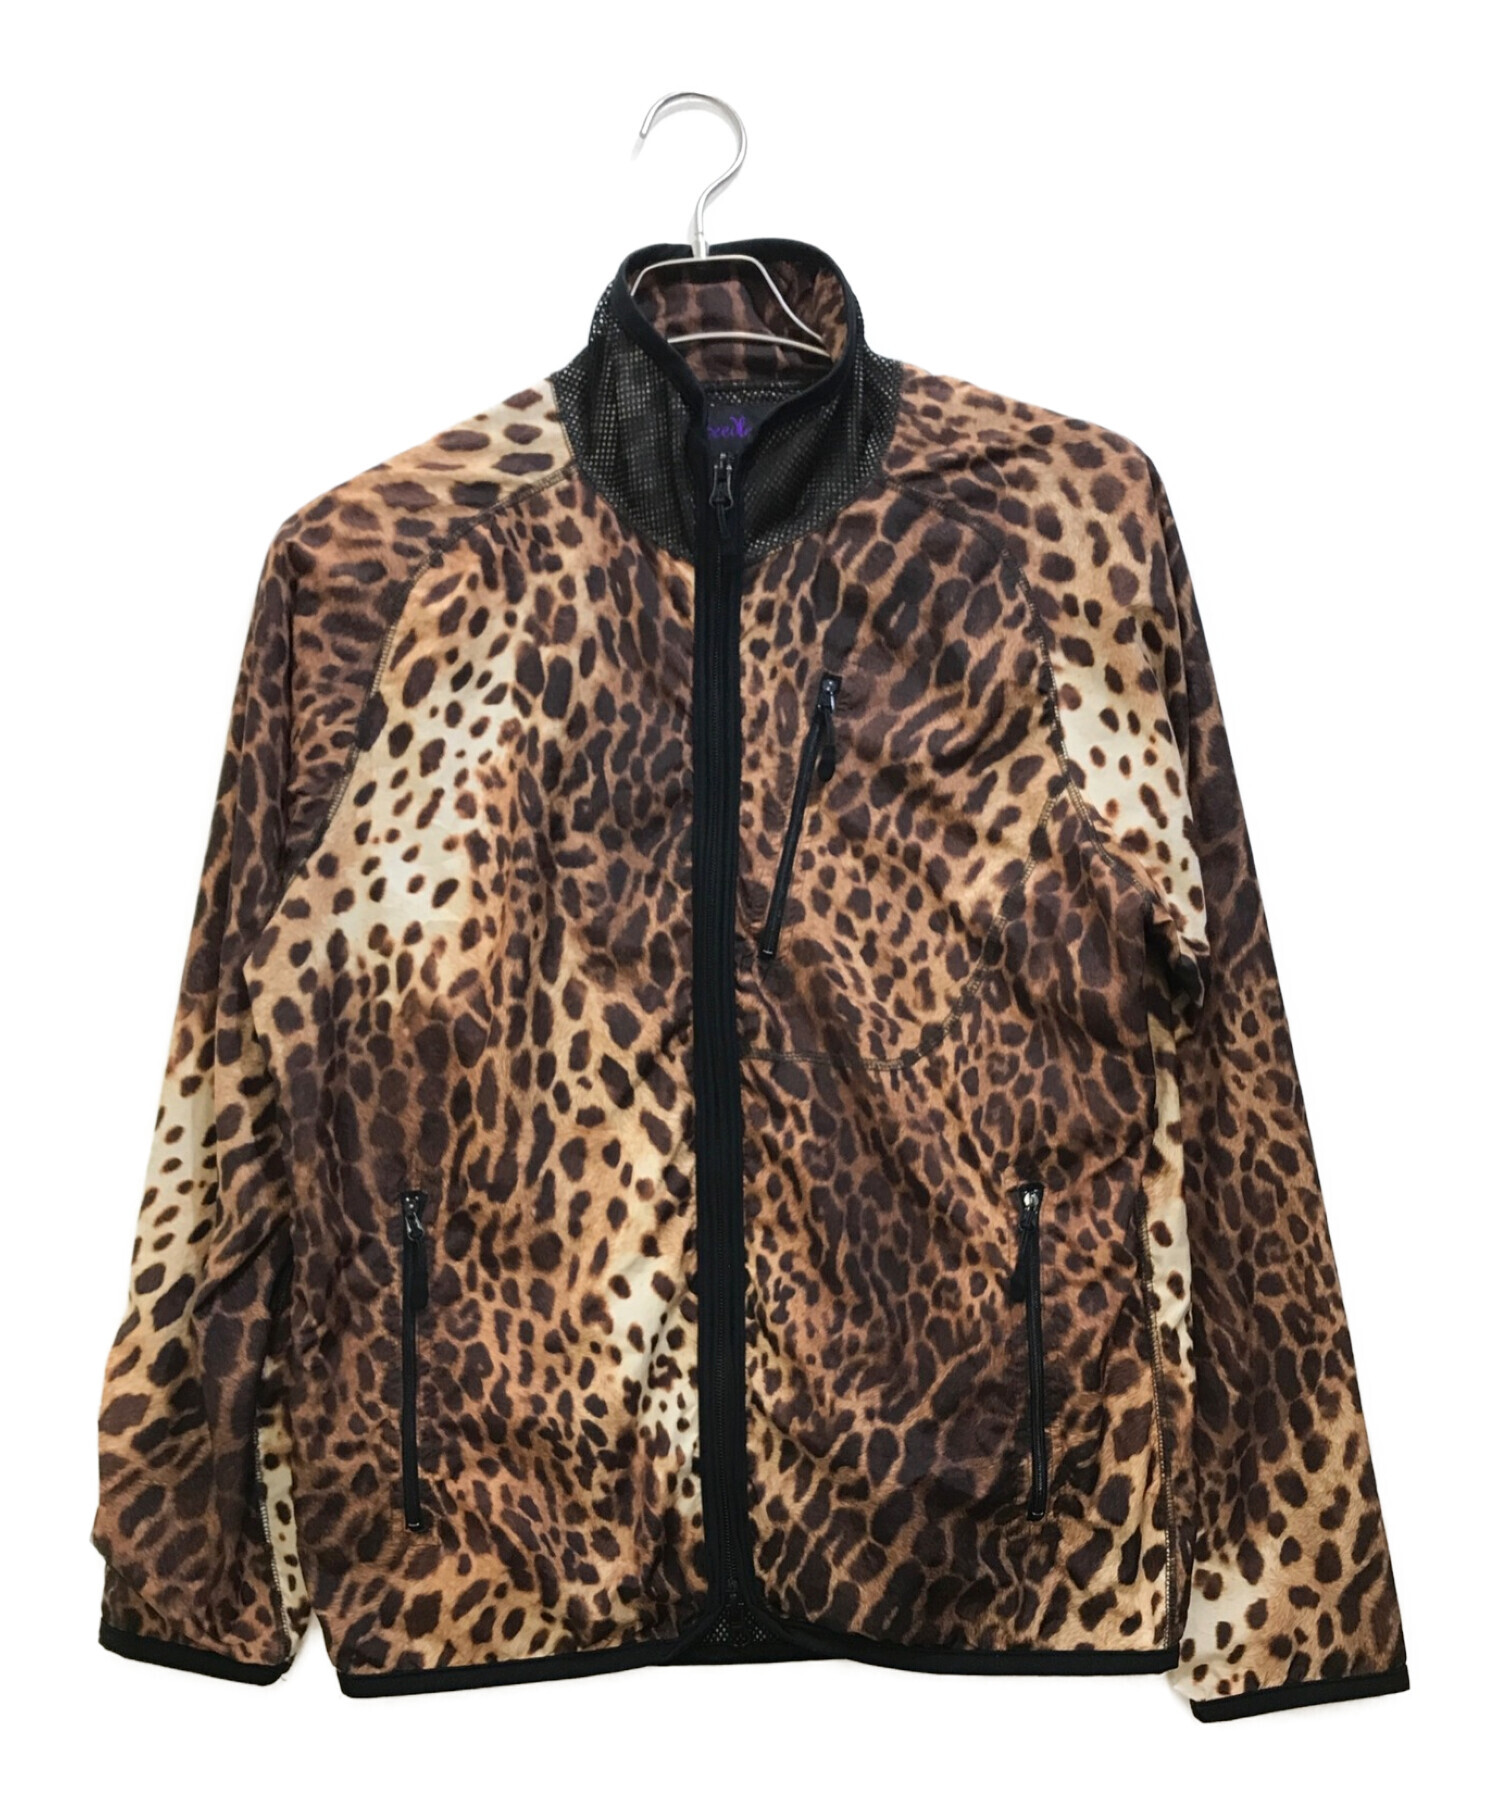 Needles Sports Wear Leopard Jacket XS-